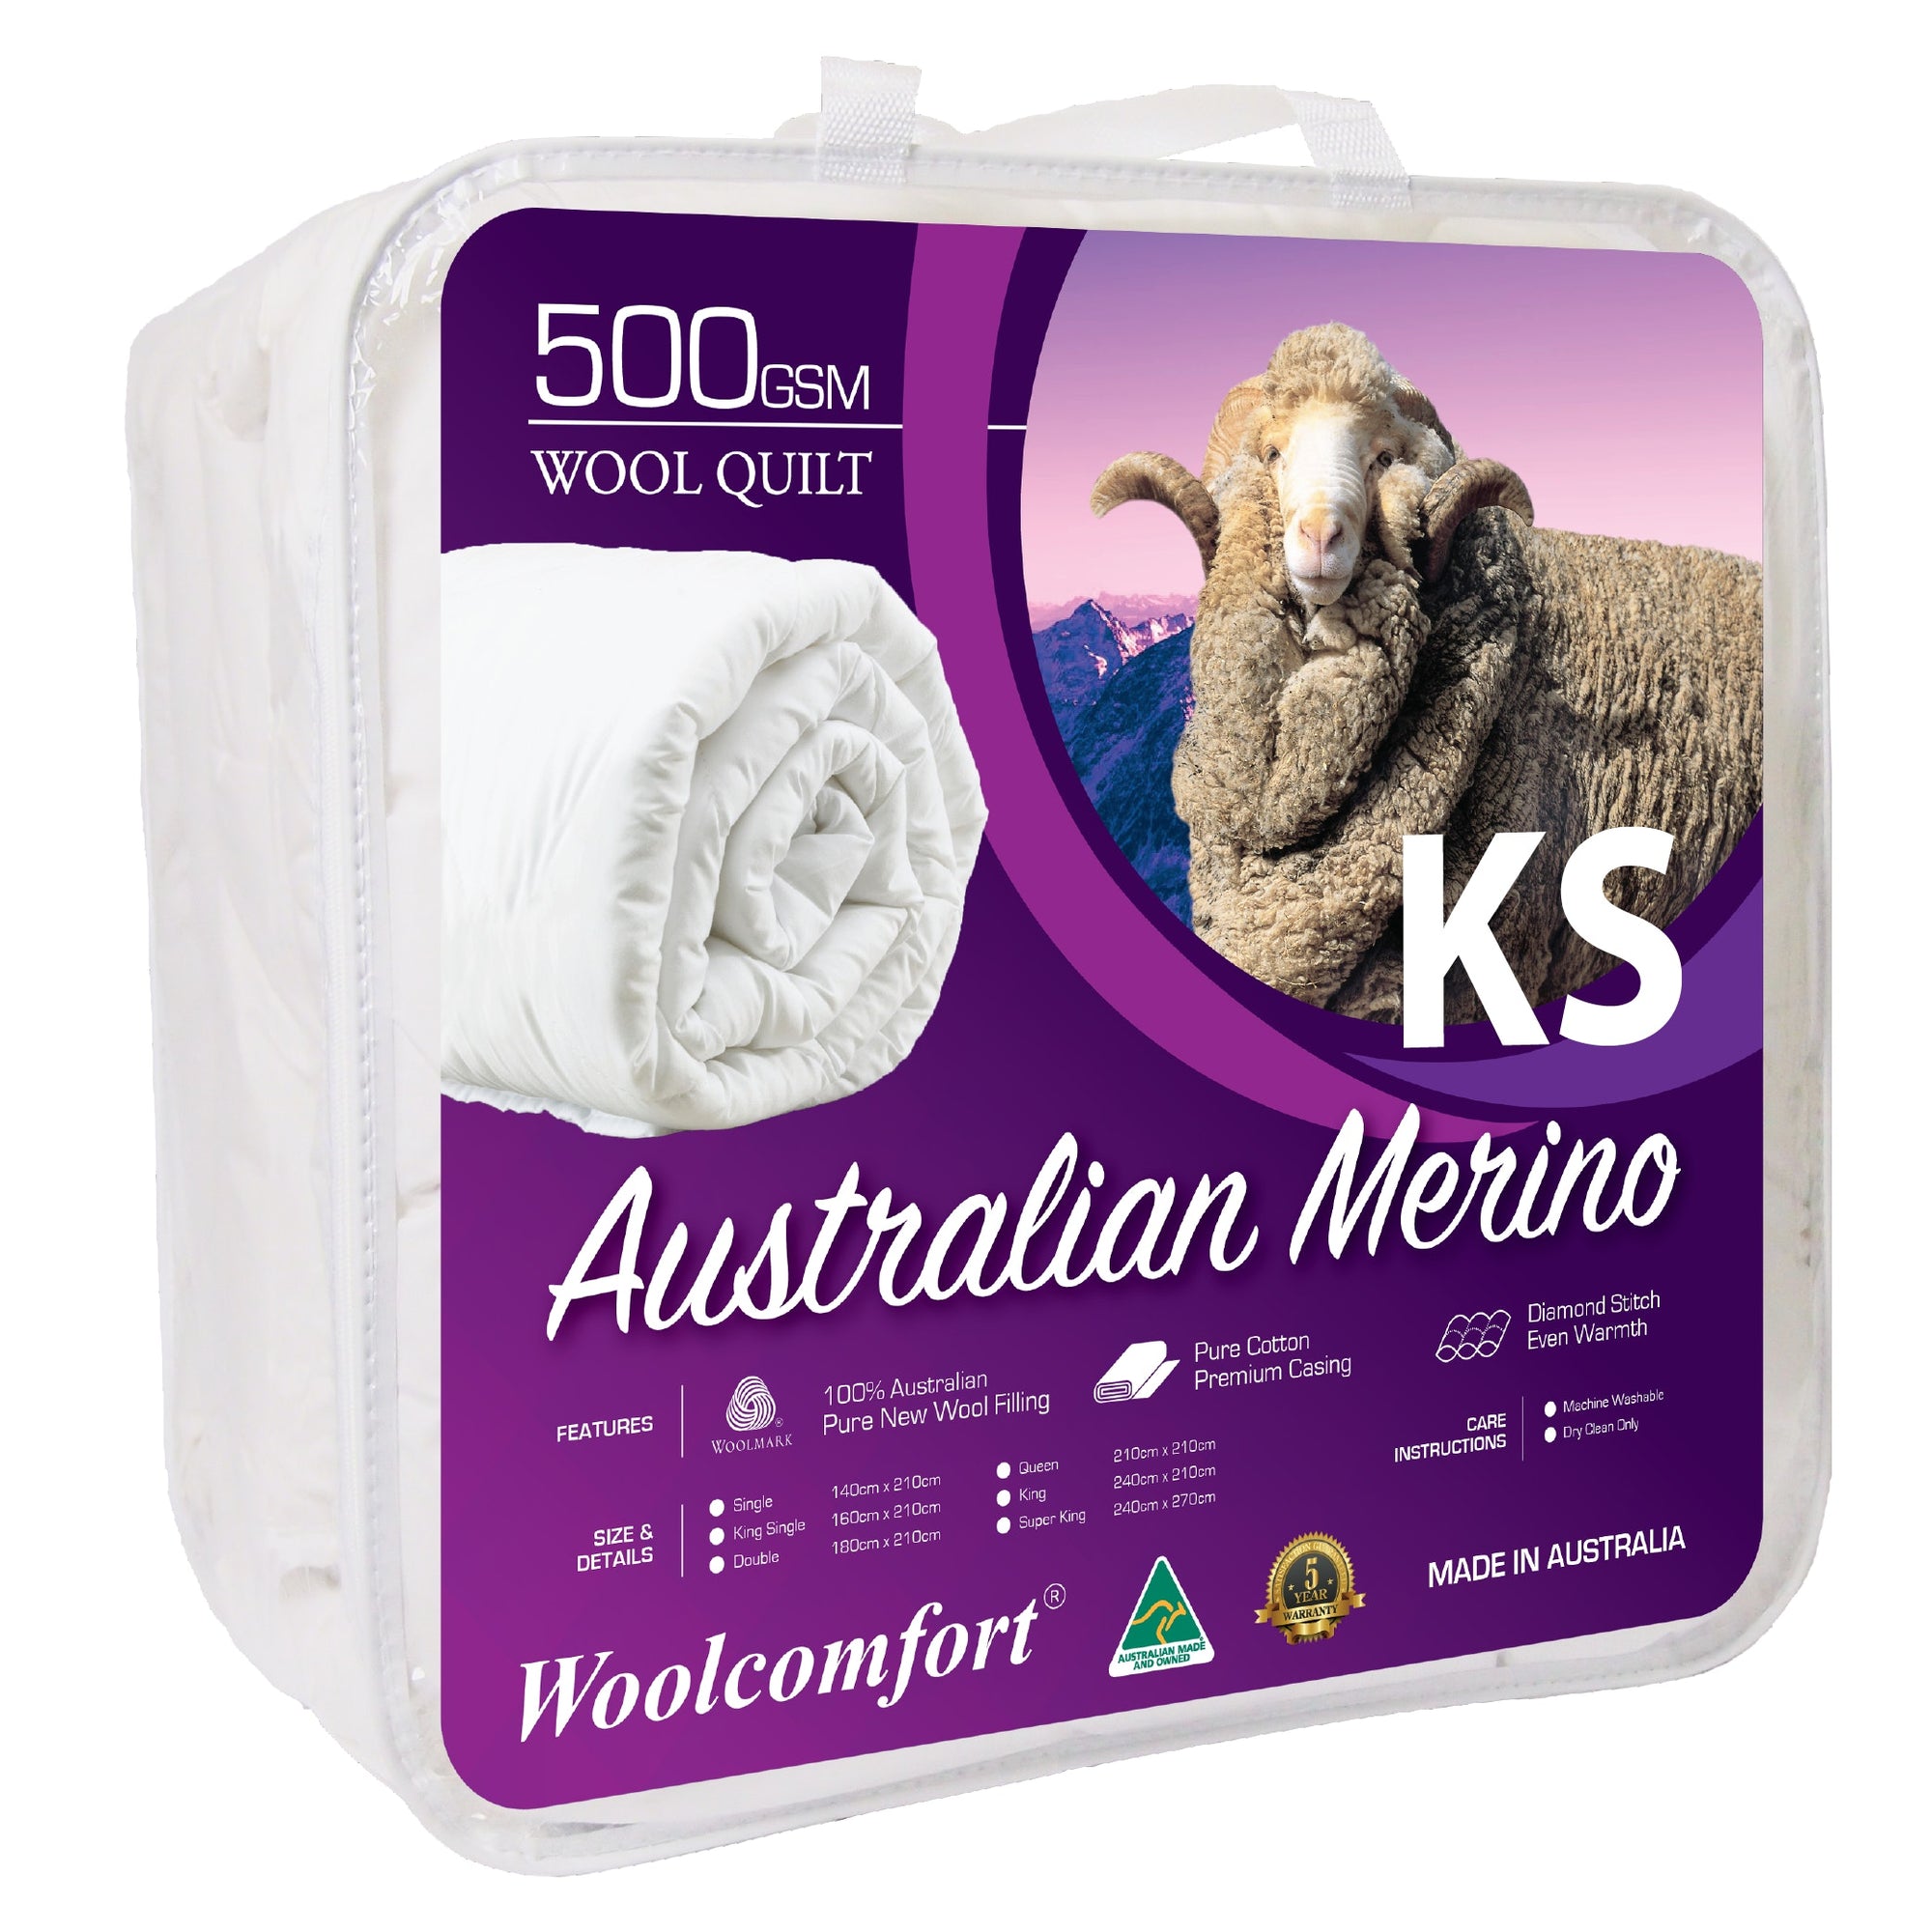 Woolcomfort Aus Made Merino Wool Quilt 500GSM - King Single Size (160x210cm)